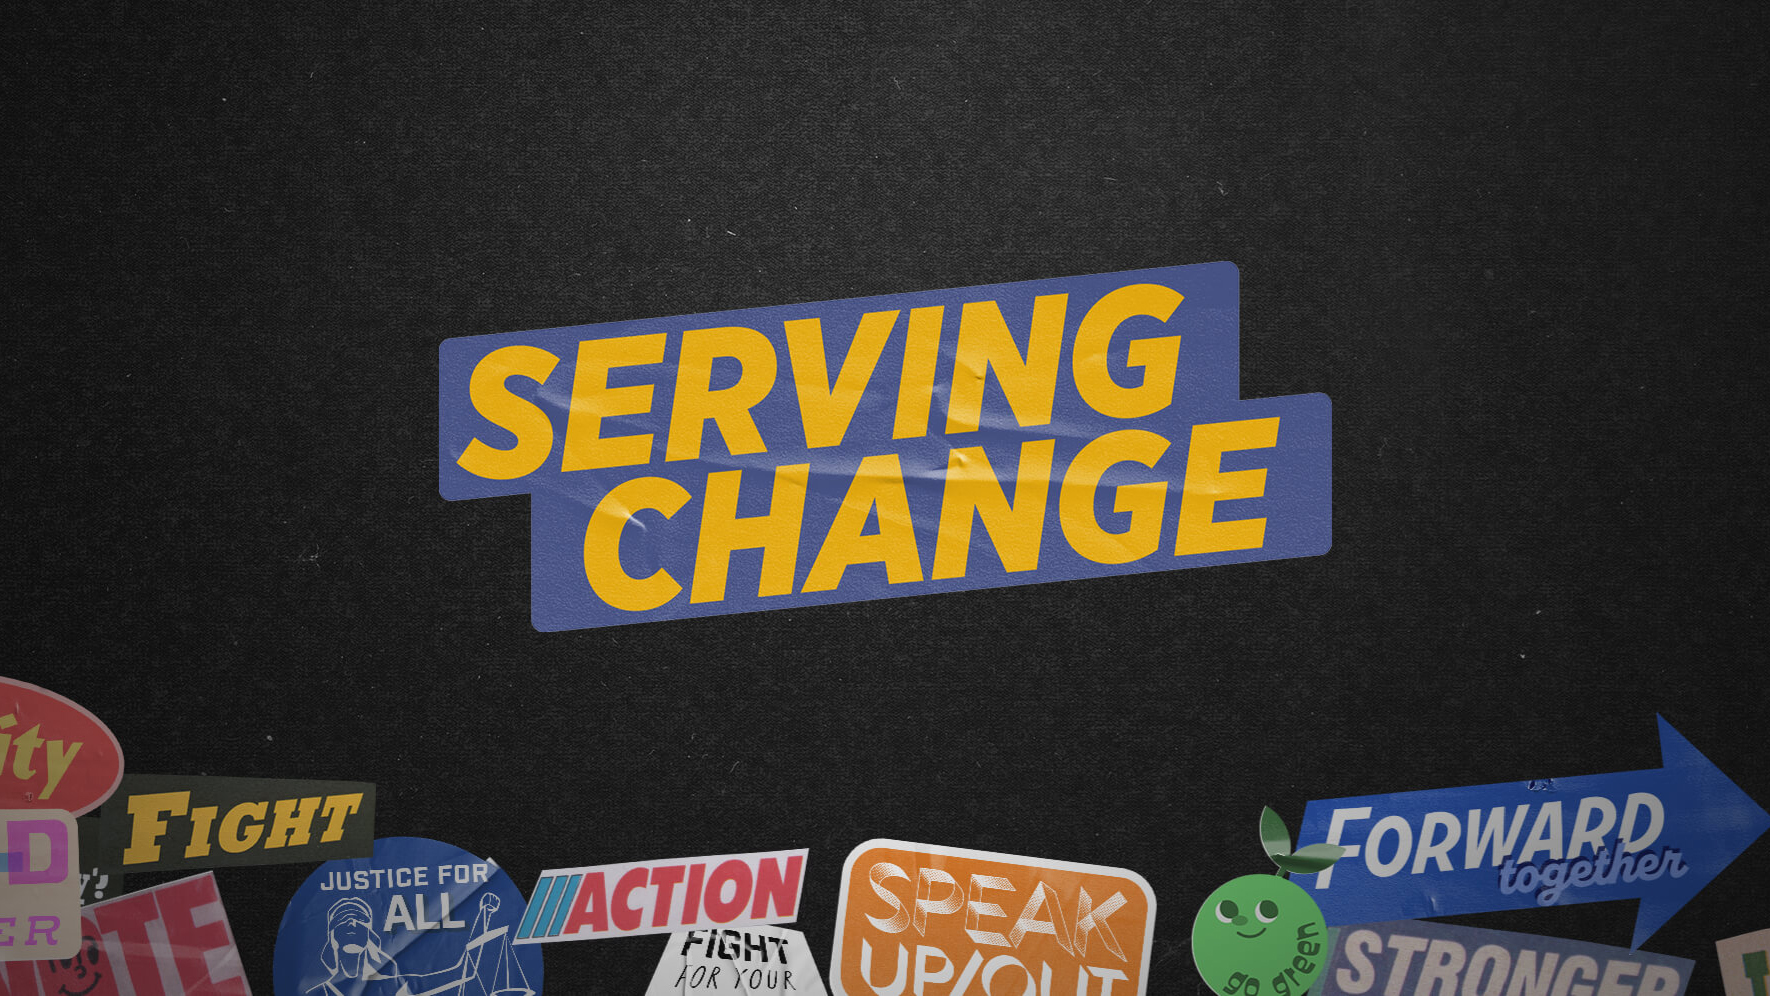 Serving Change